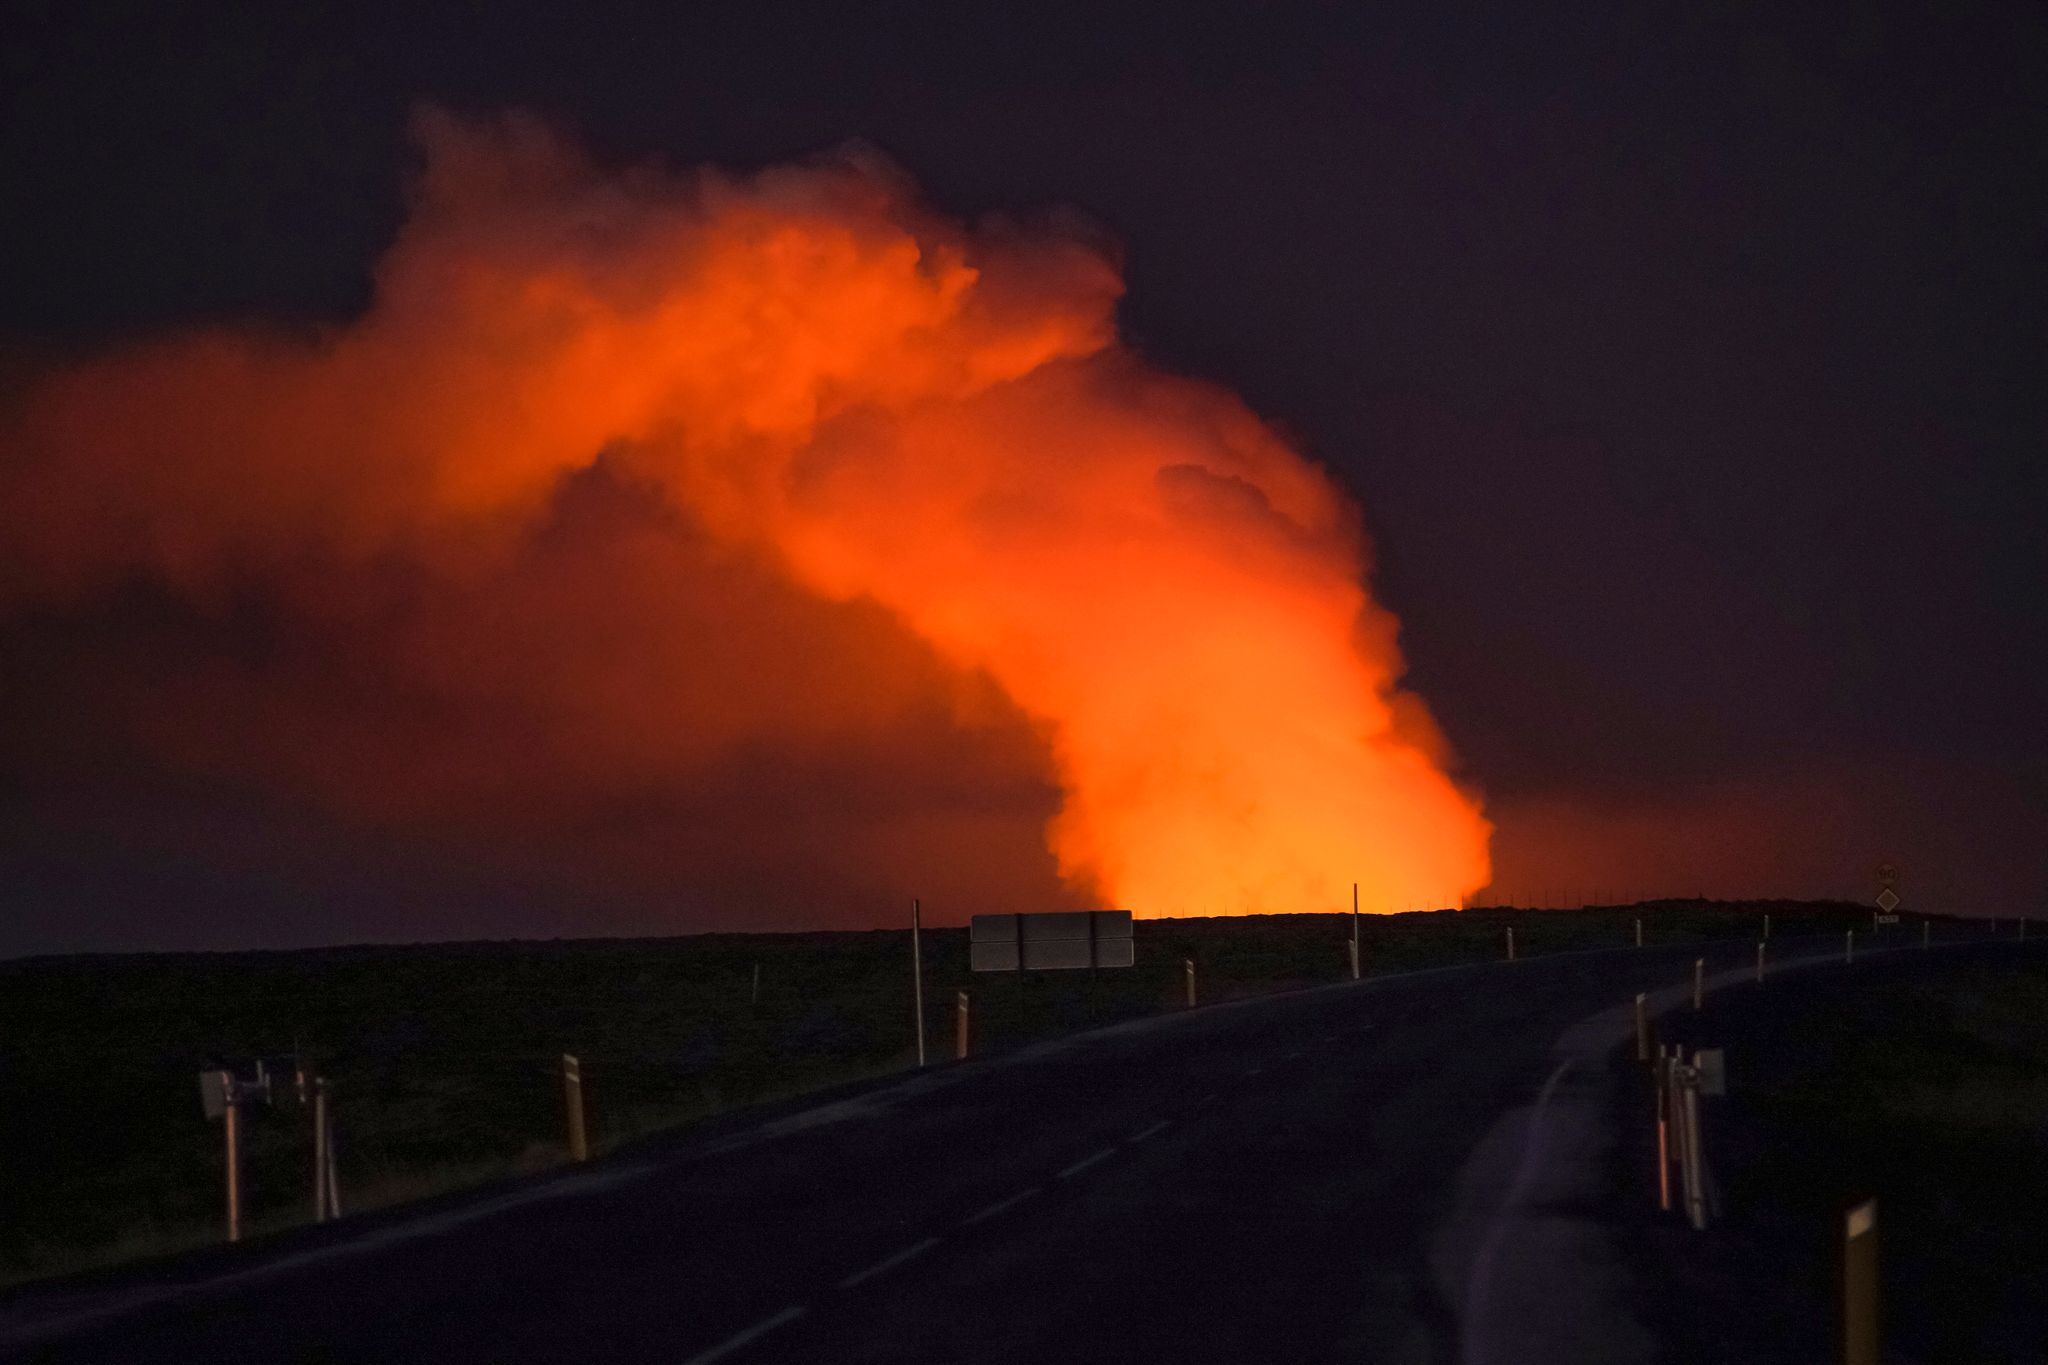 neuer vulkanausbruch auf island - gefahr für evakuierten ort